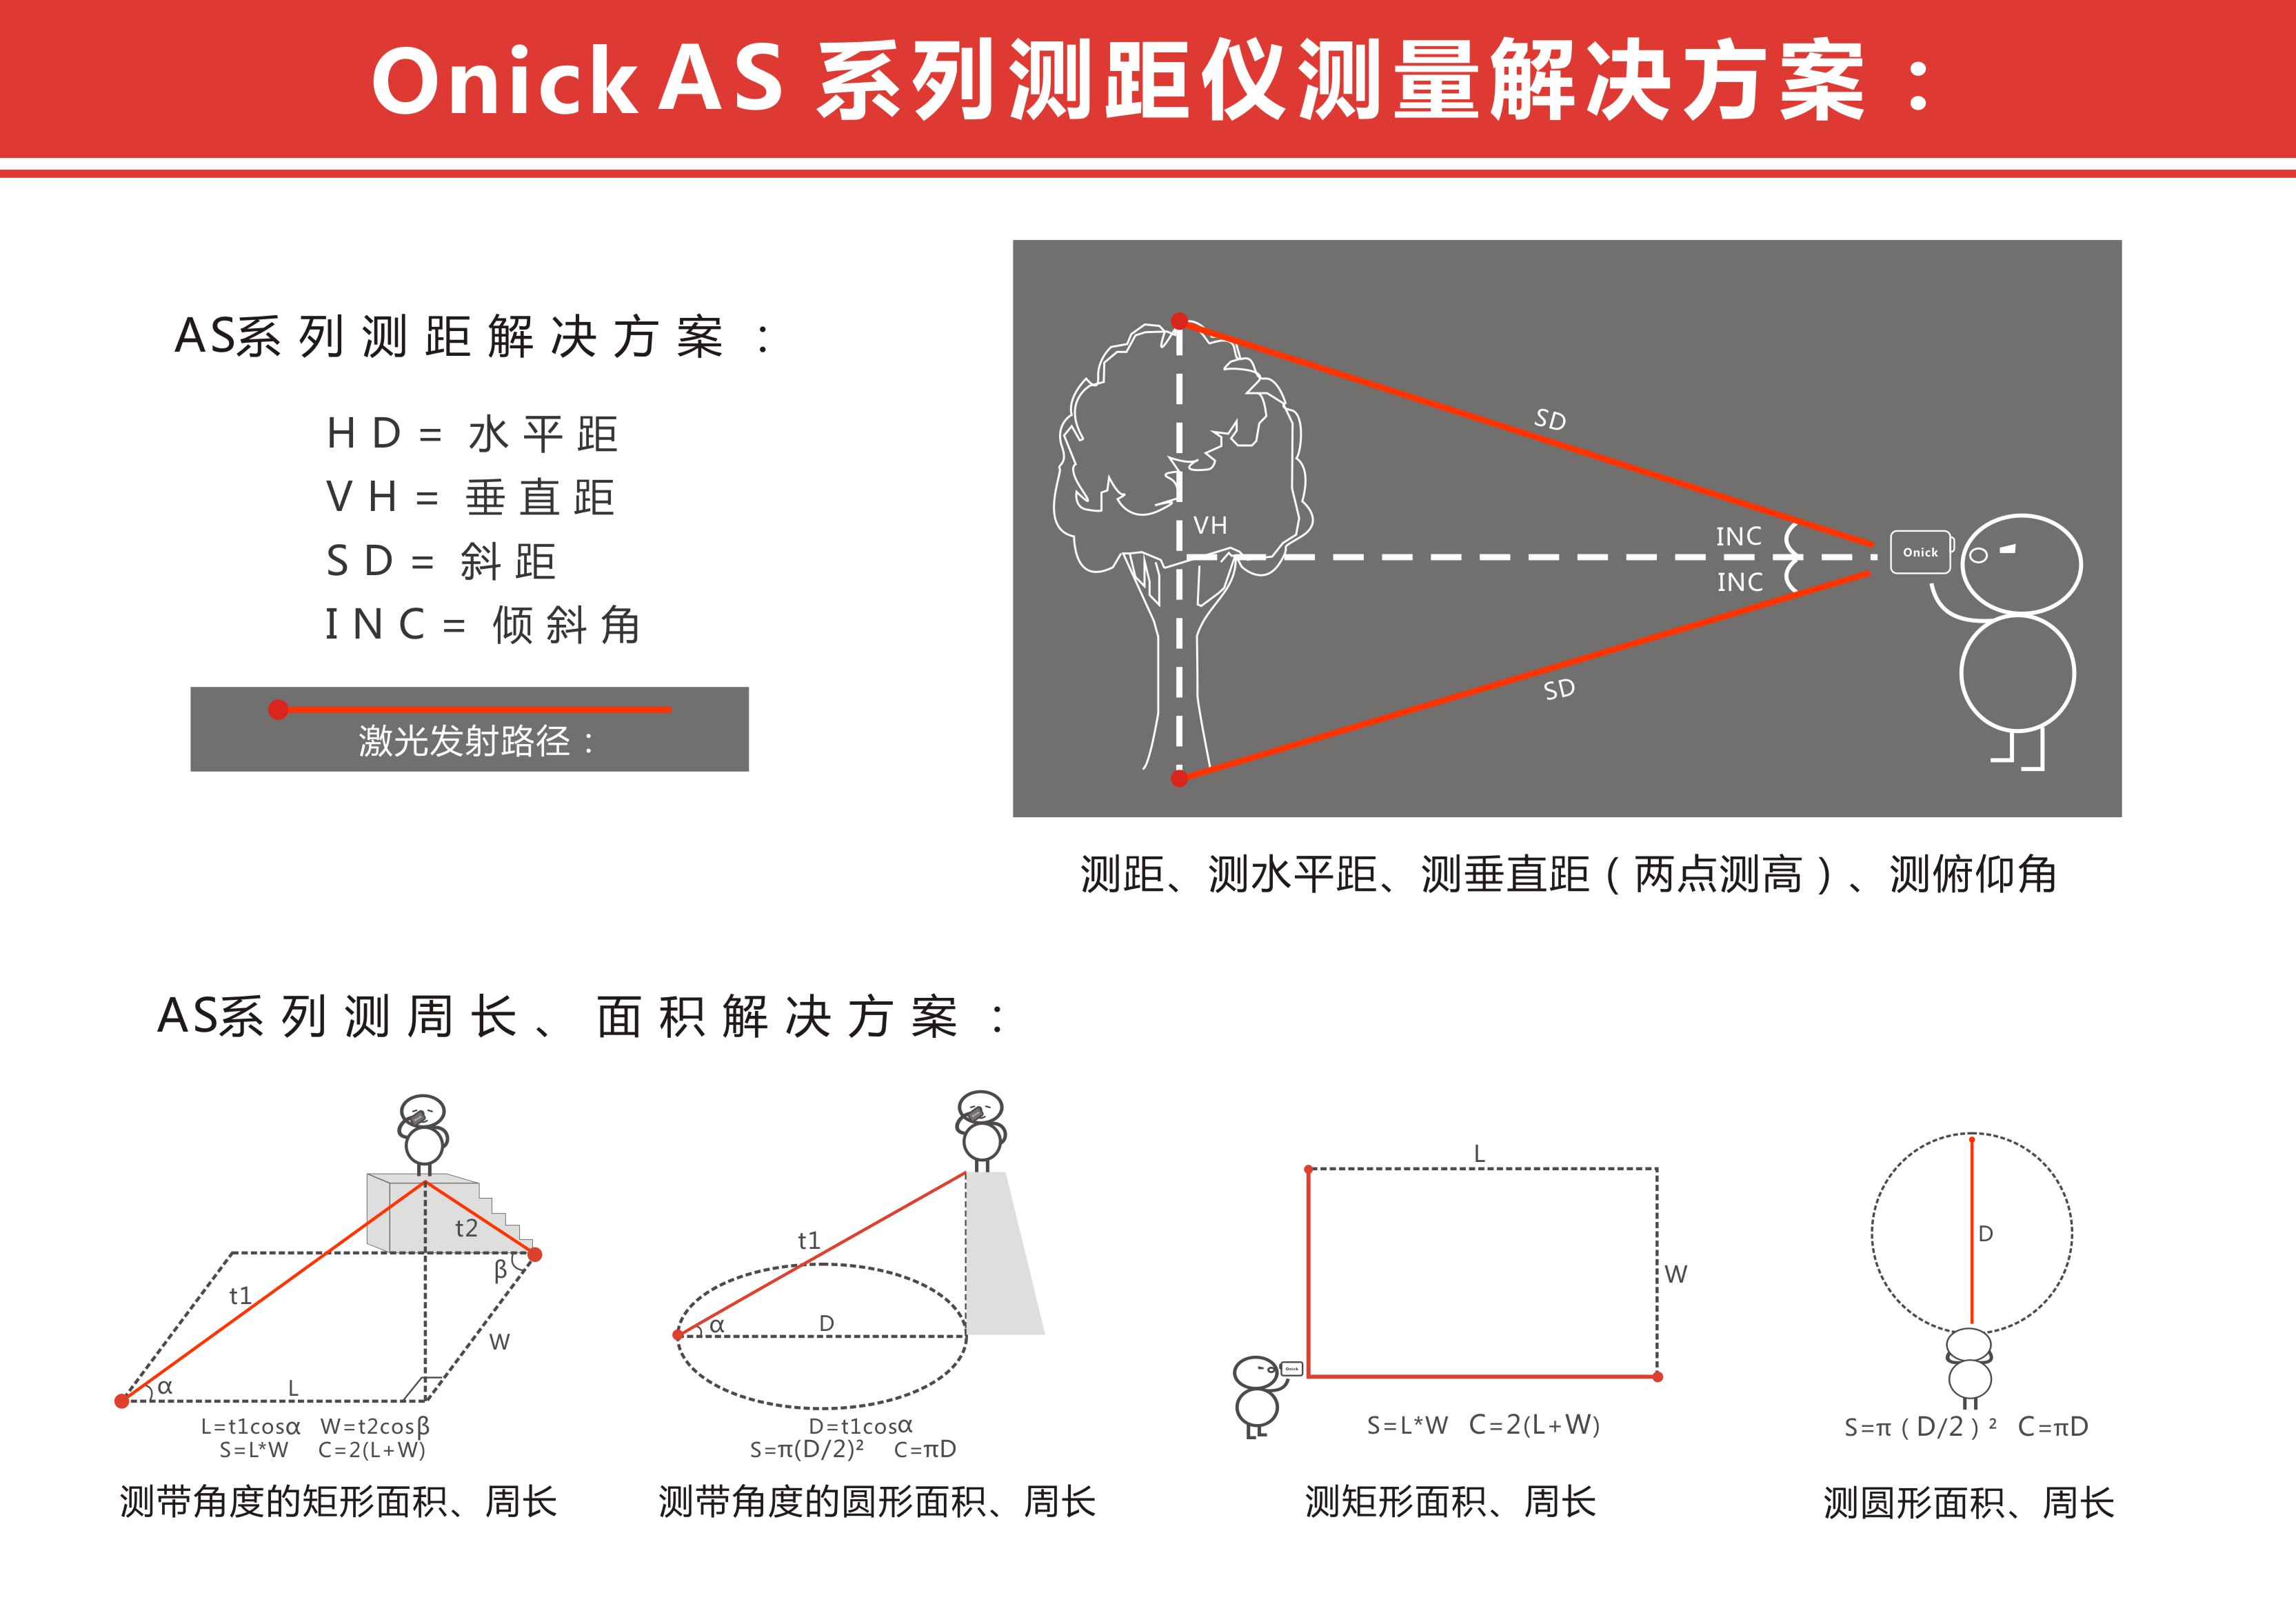 如何选购Onick欧尼卡激光测距仪？